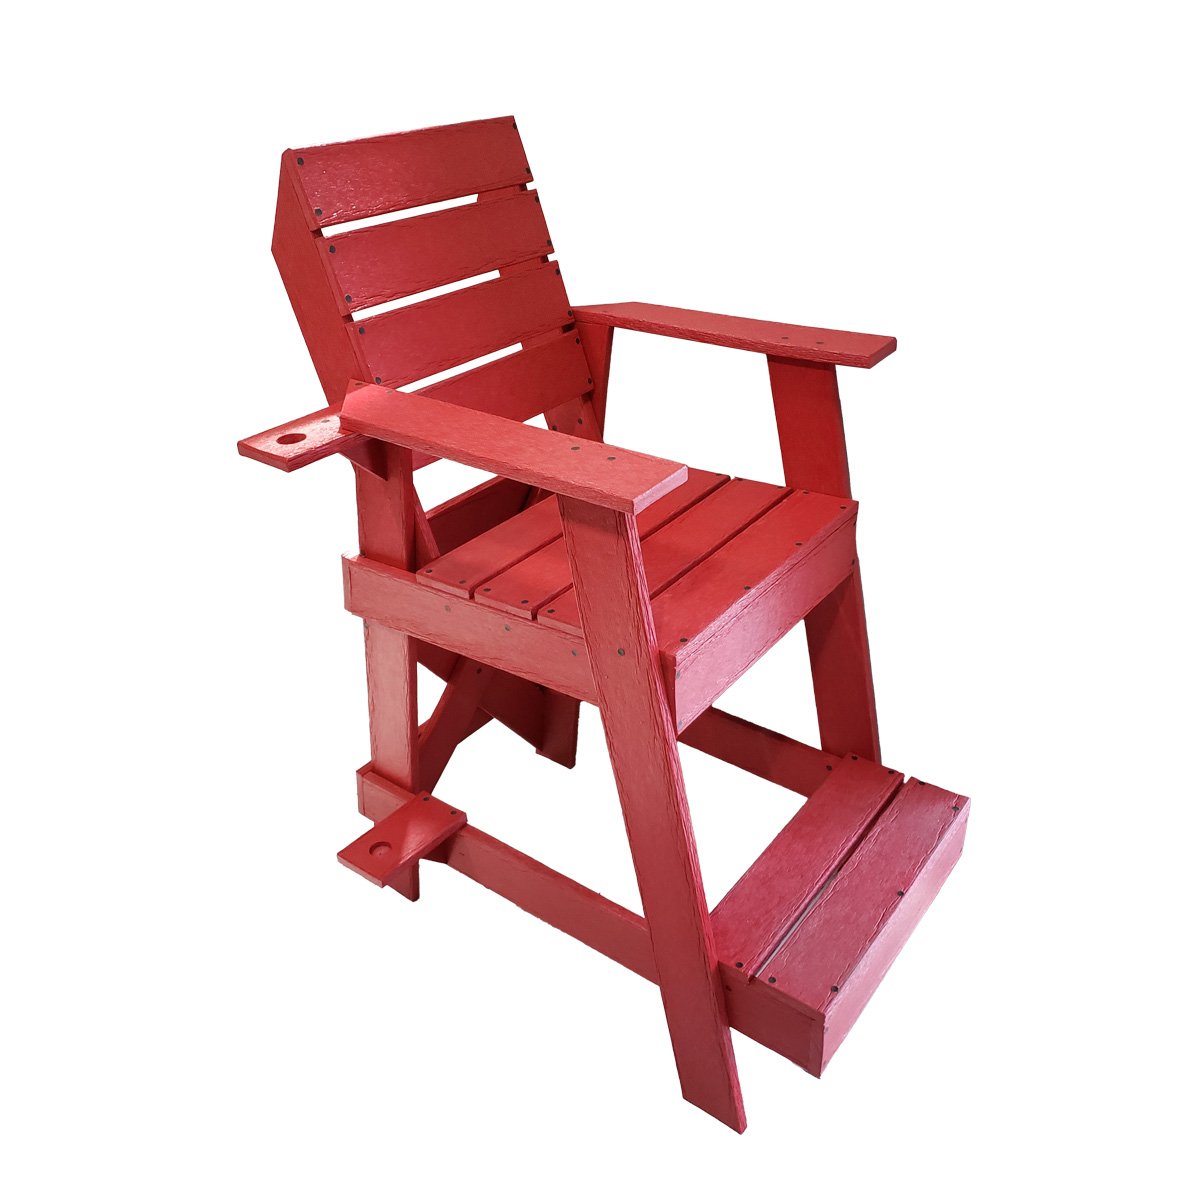 Cadeira Salva Vidas Vermelha em Madeira Plástica Maciça 100% Reciclada 1,6m / Lc-09sv